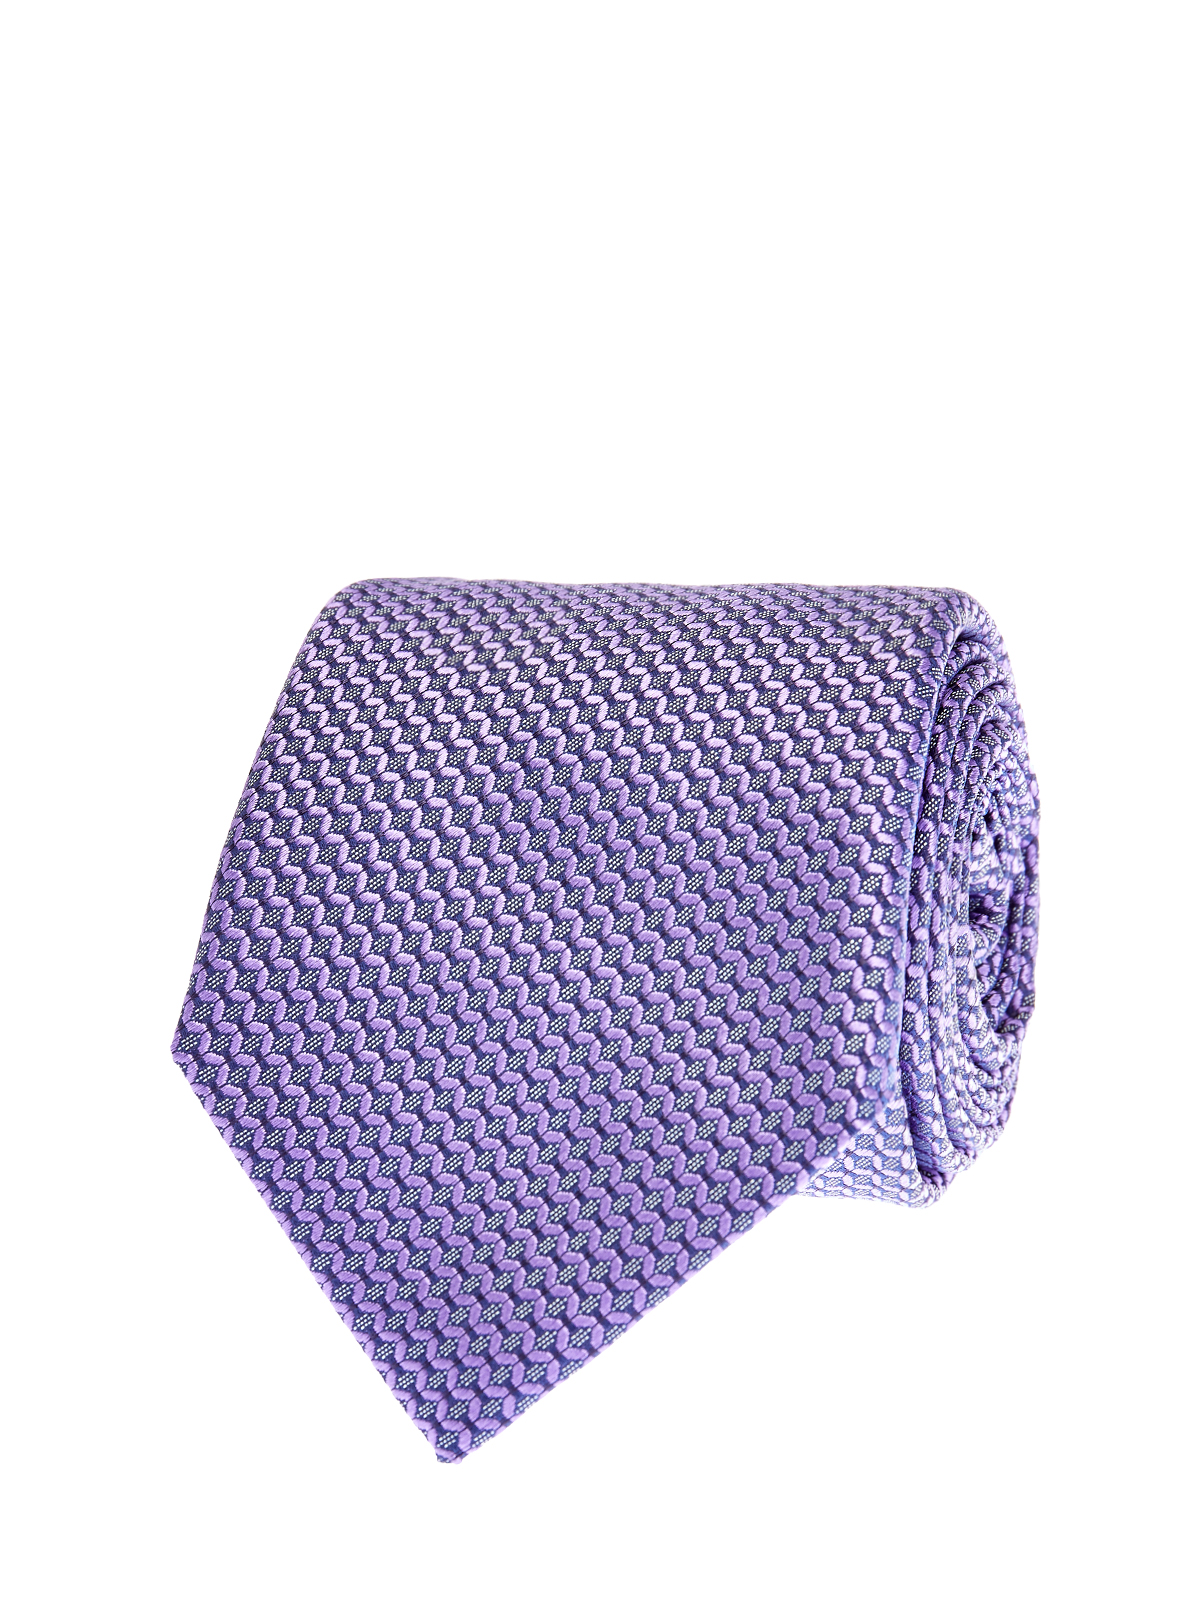 Шелковый галстук с жаккардовым 3-D принтом CANALI, цвет фиолетовый, размер M